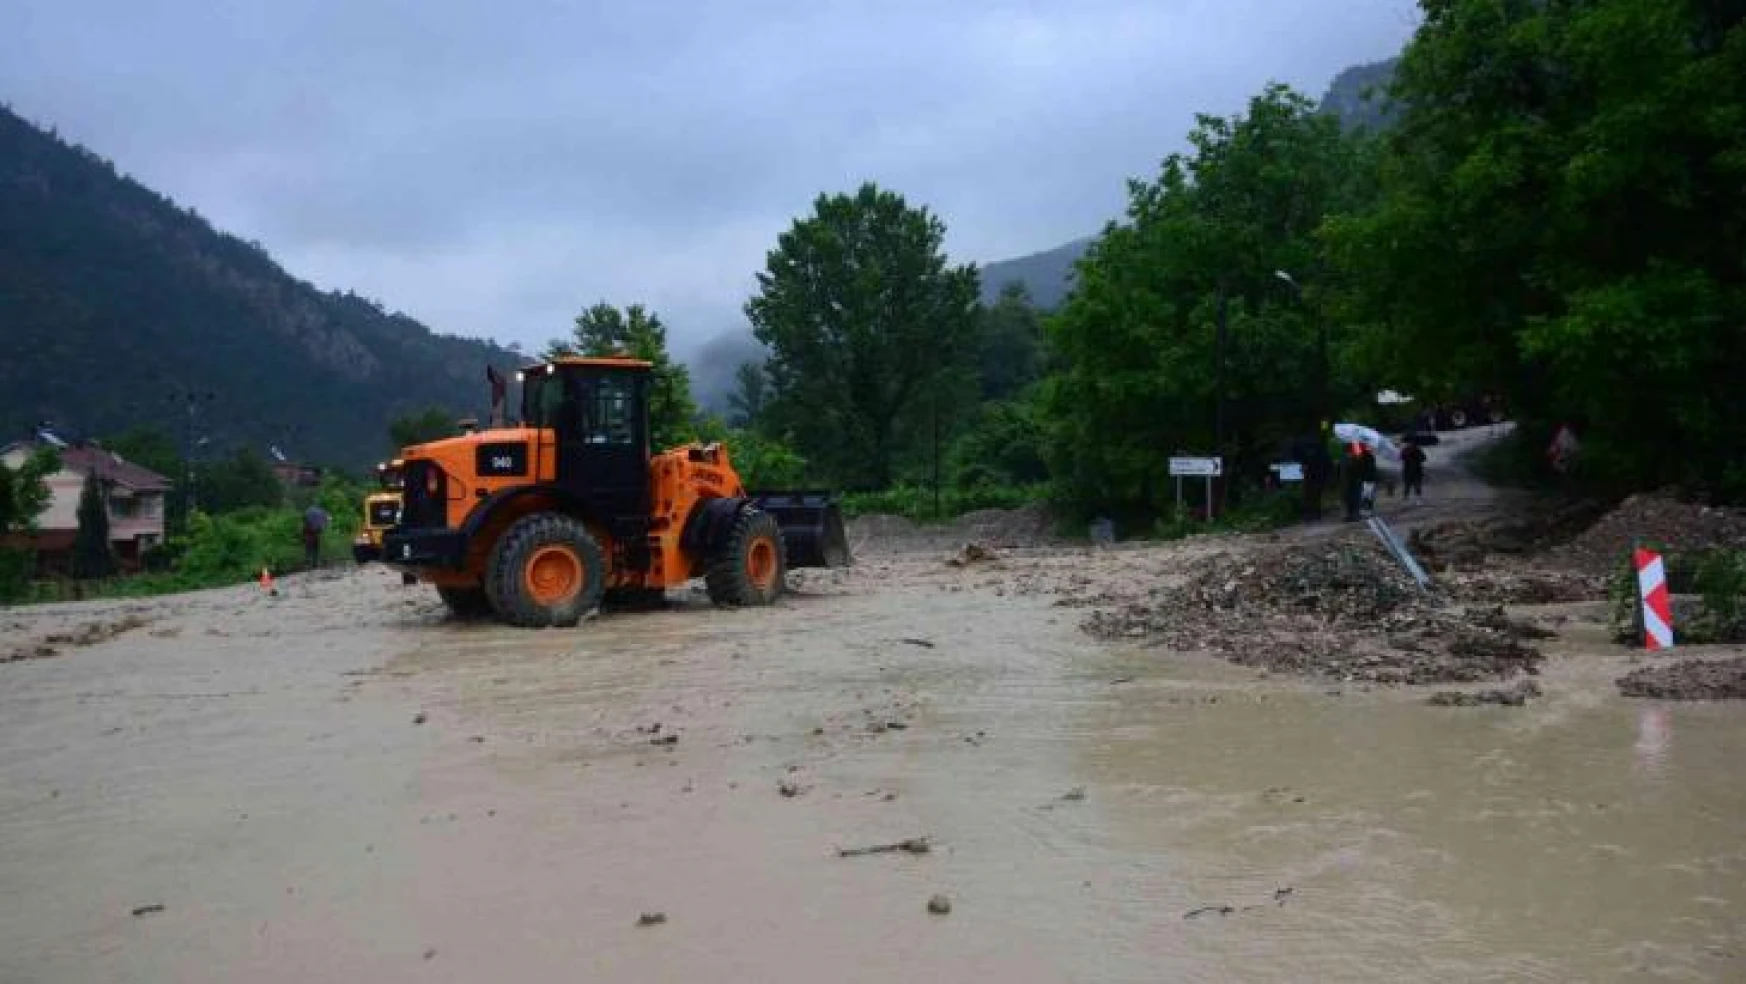 Dağlardan gelen yağmur suyu trafiği durdurdu, araçlar kontak kapattı